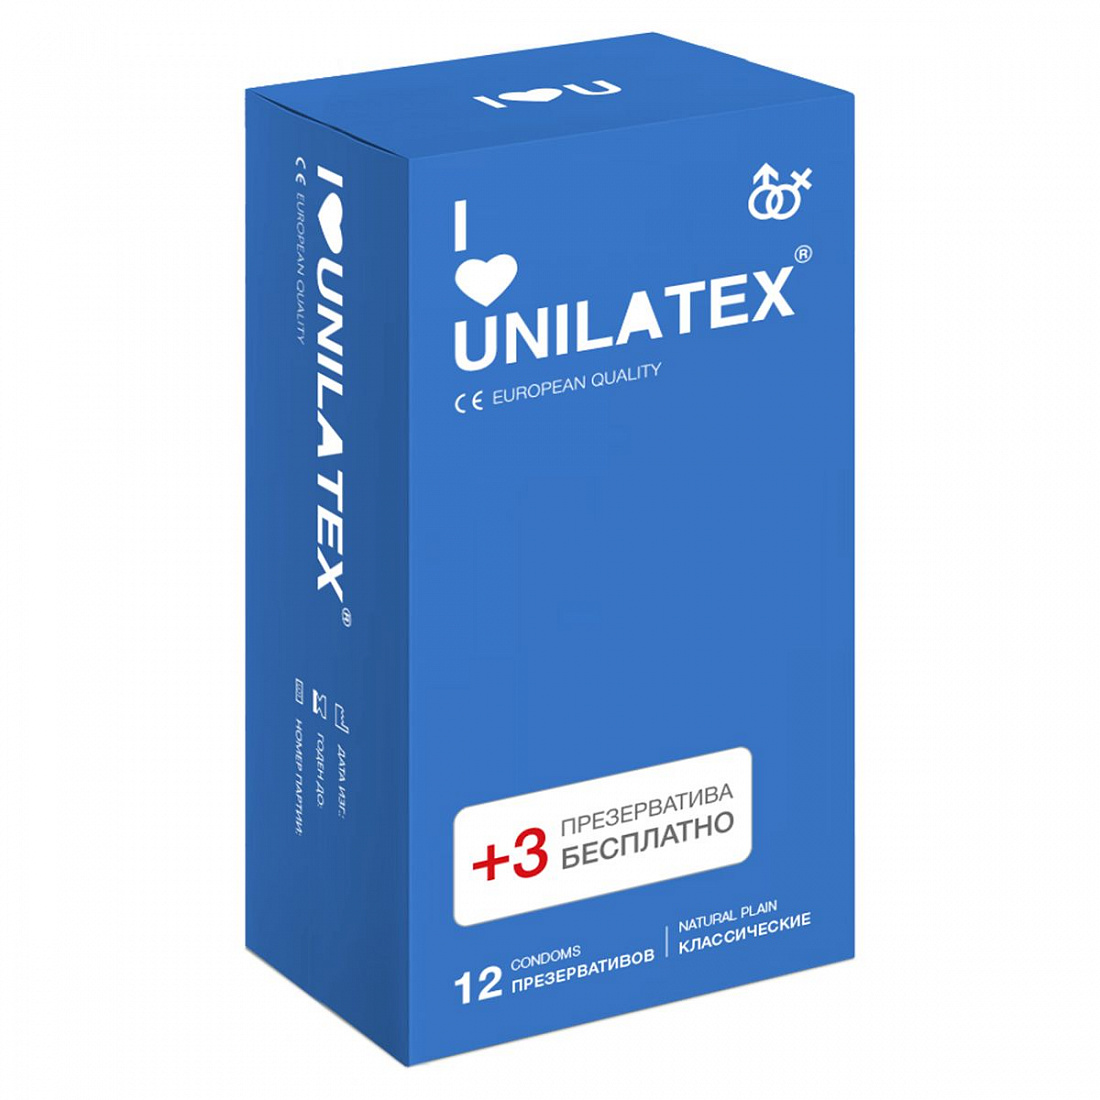   Unilatex Natural Plain - 12 . + 3 .   Unilatex Unilatex Natural Plain 12 + 3 -  876 .